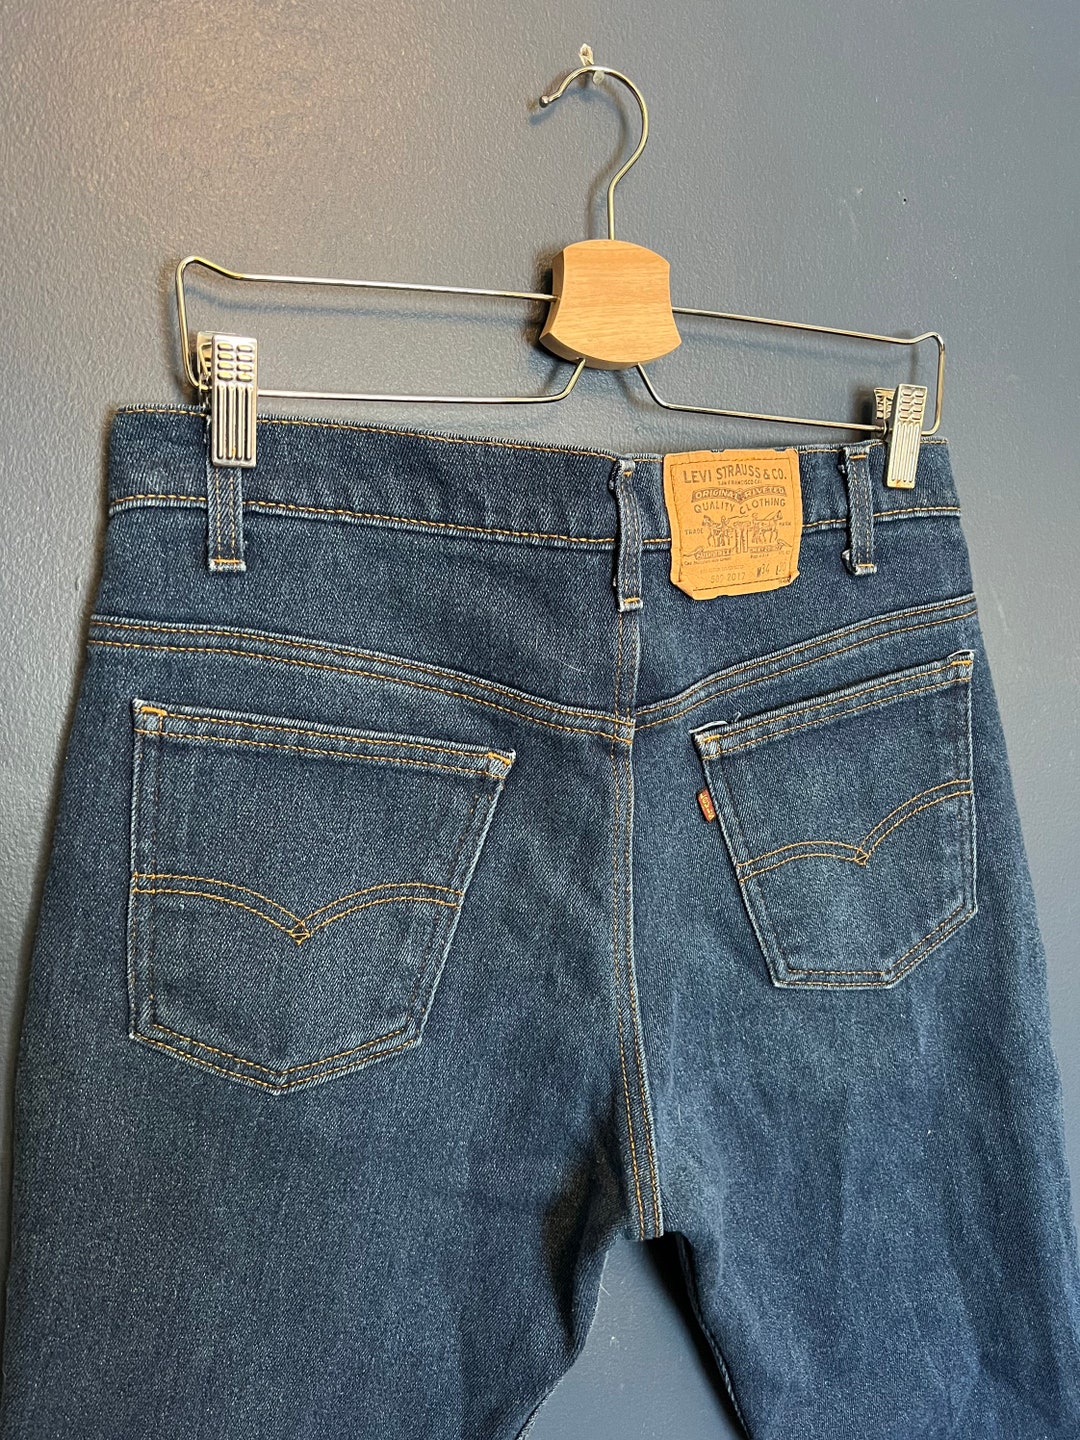 Vintage 80s Levis 509 USA Made Dark Indigo Jeans Size 34x30 - Etsy